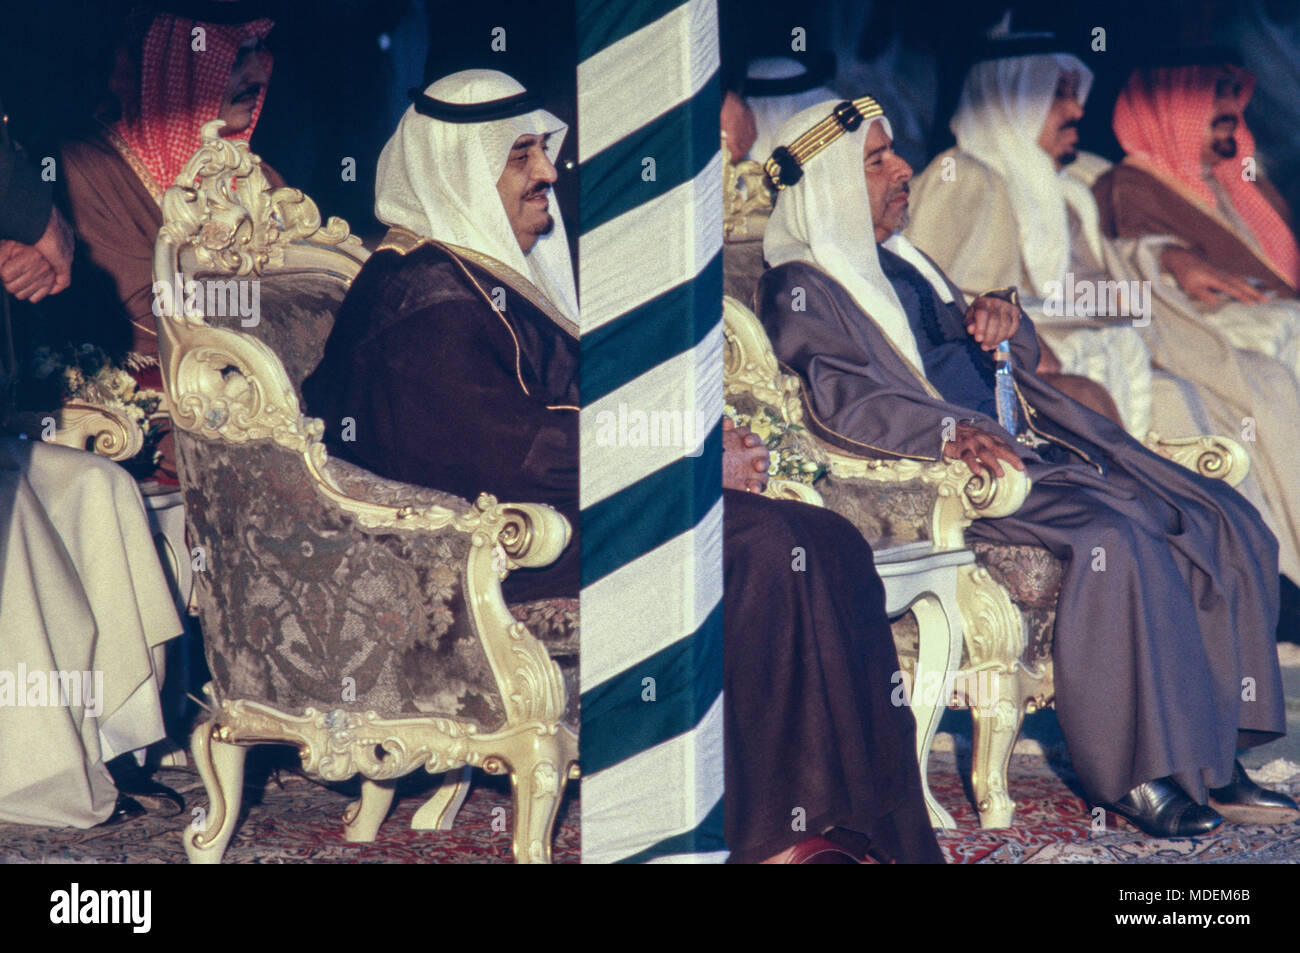 Manama, Bahrain - 26 novembre 1986 - Re Fahd bin Abdulaziz Al Saud arriva all'Aeroporto Internazionale di Bahrain, soddisfatte dalla Sua Altezza Reale Shaikh Isa Bin Salman Al Khalifa, dellâ emiro del Bahrein, per la cerimonia di apertura il $800 milioni di causeway collegando il Bahrein e Arabia Saudita, costruito dalla società olandese Ballast Nedam. Foto Stock